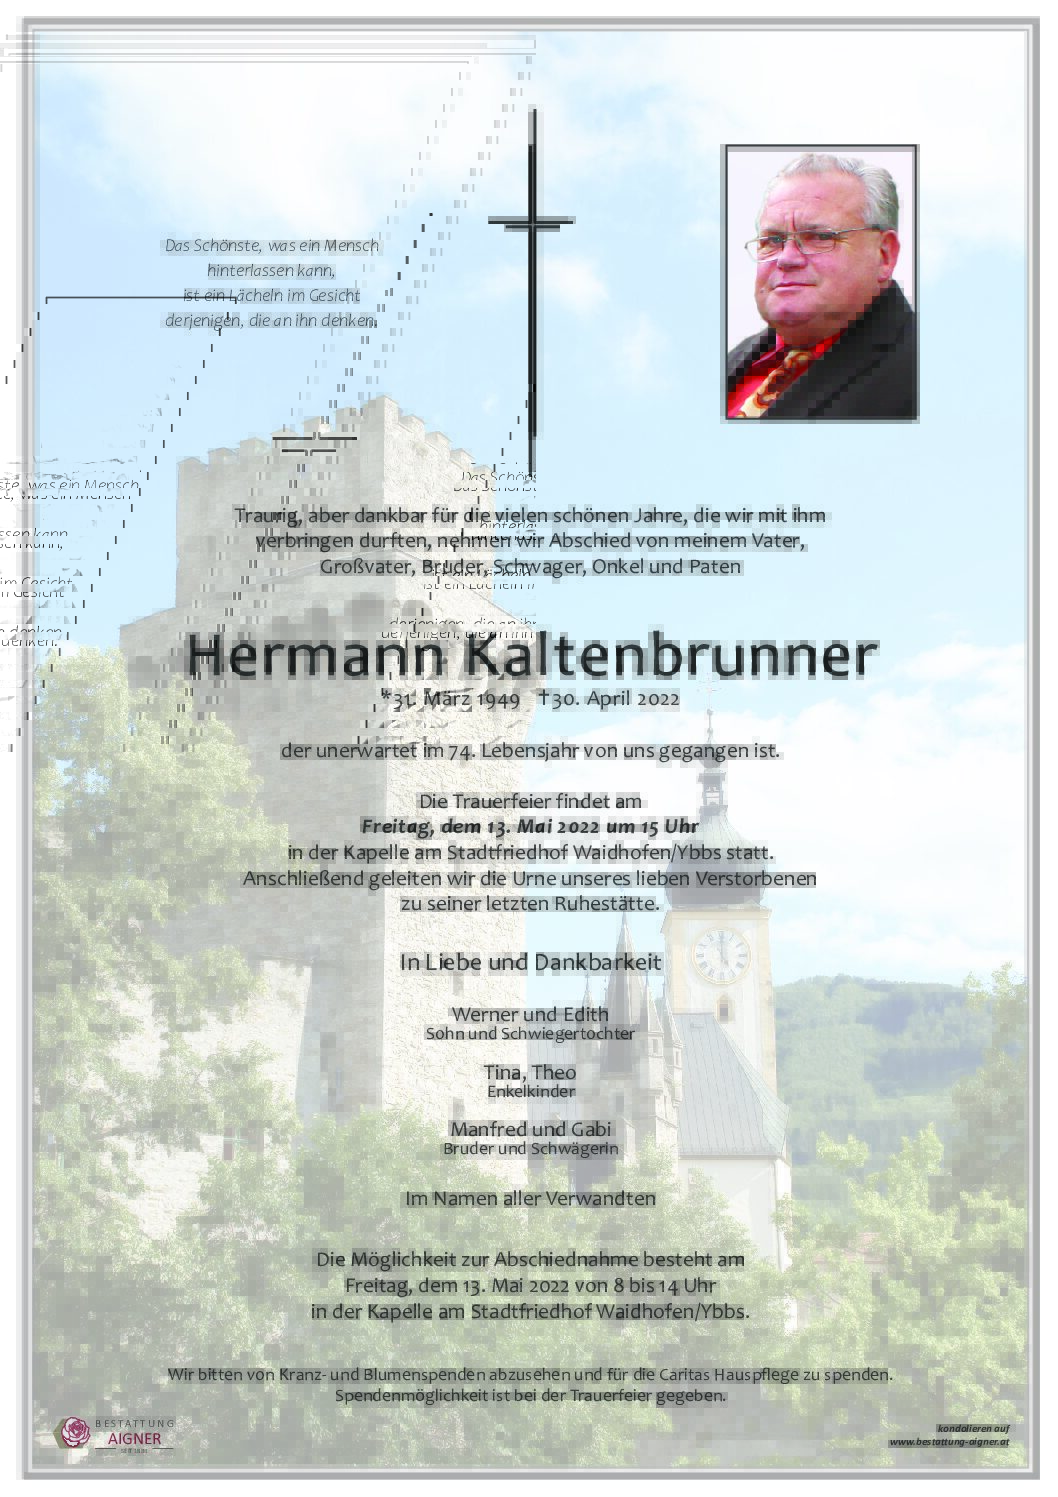 Hermann Kaltenbrunner